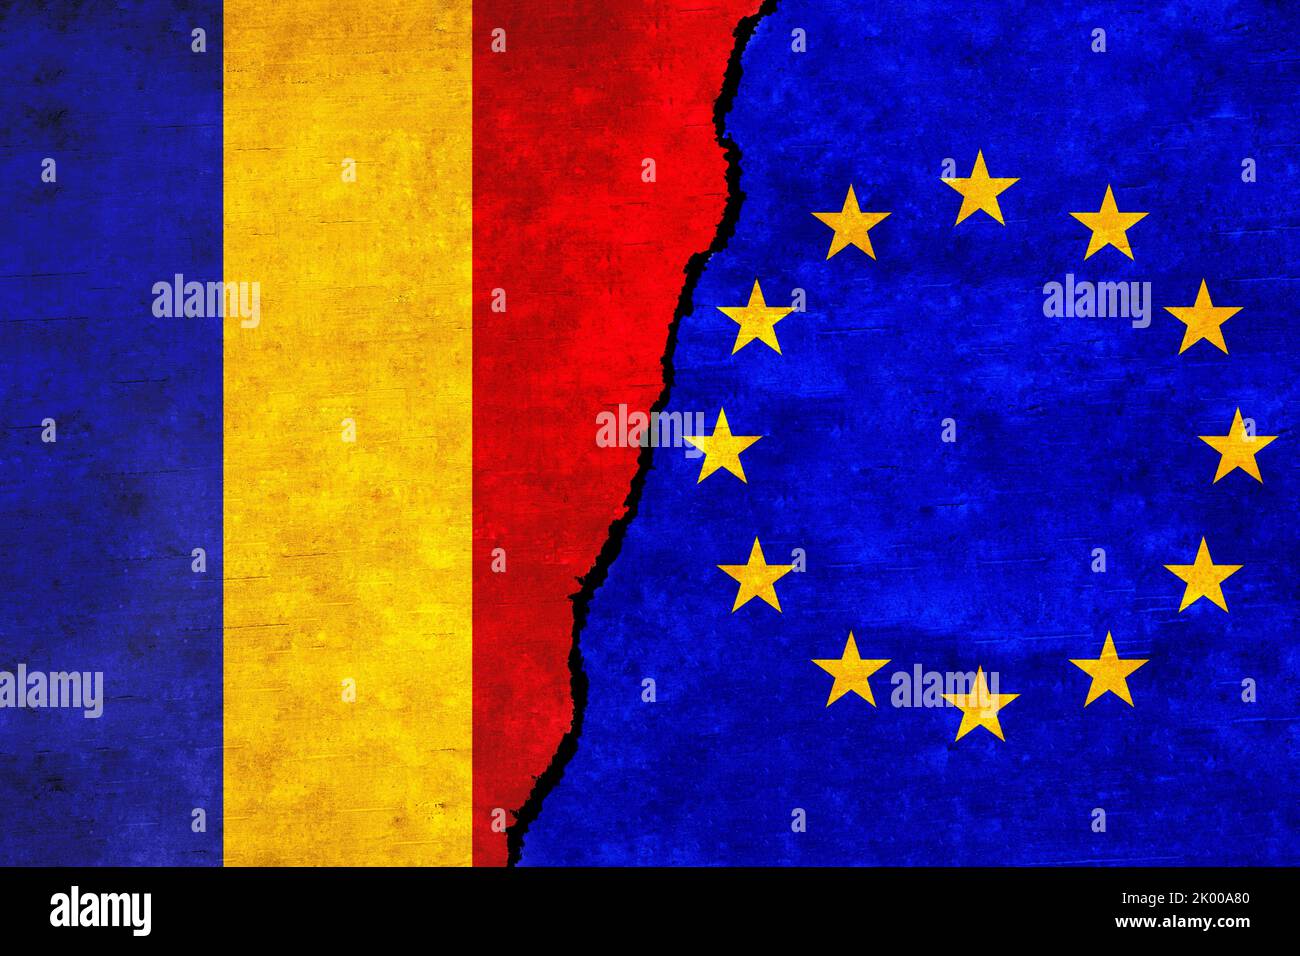 La Romania e l'Unione europea battono bandiera insieme. Alleanza UE Romania, politica, economia, commercio, relazioni e conflitti Foto Stock